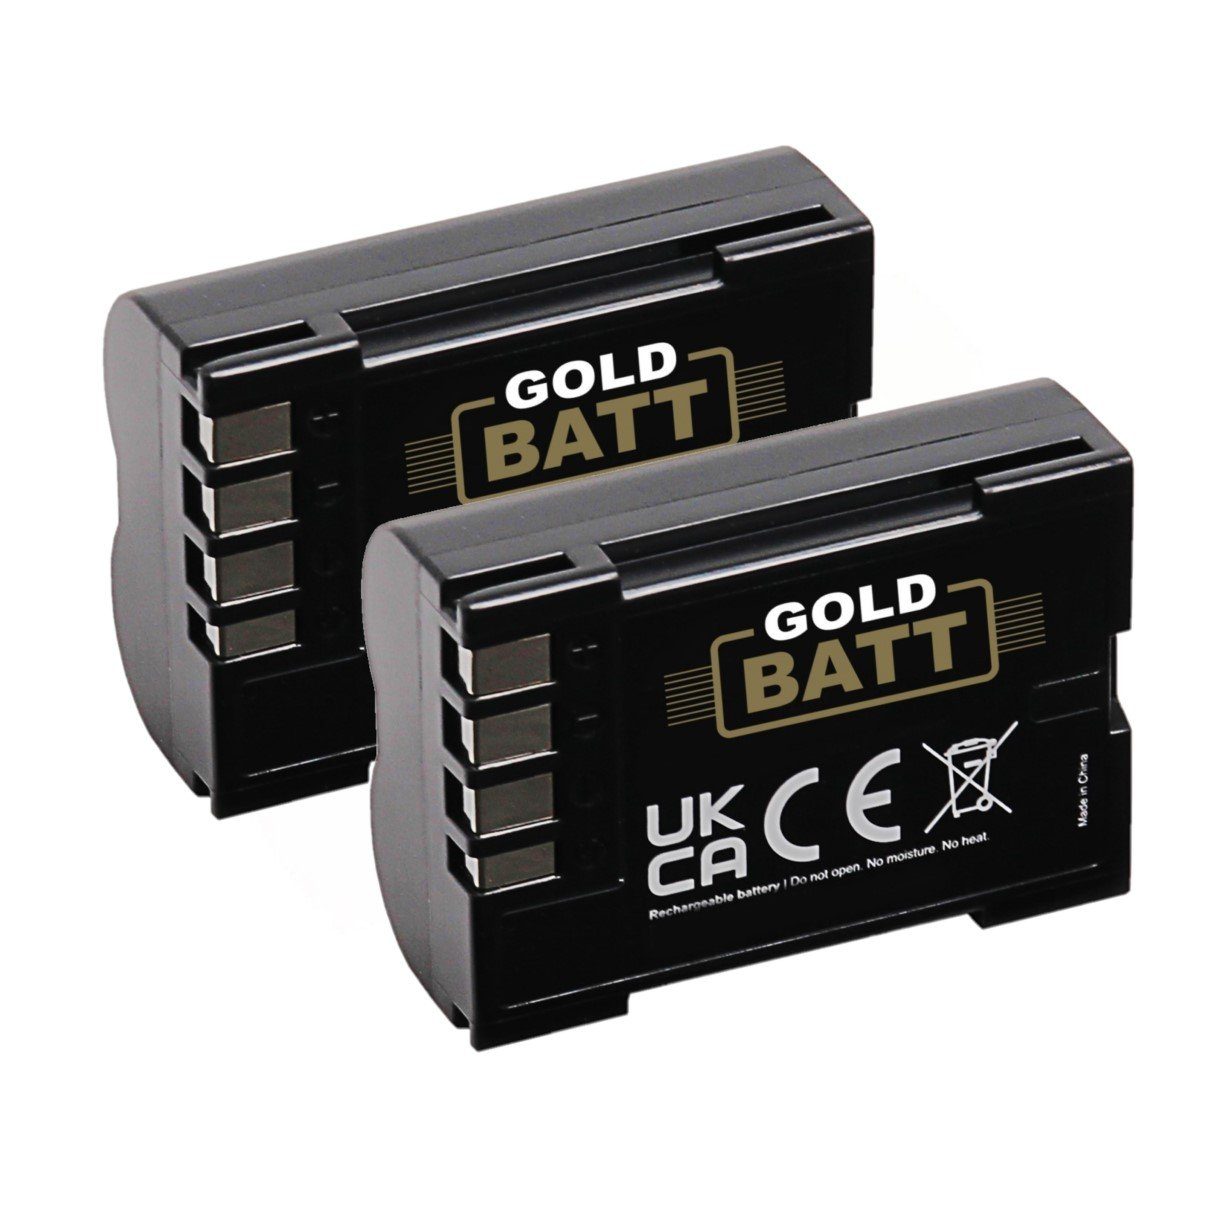 GOLDBATT 2x Akku für Olympus BLM1 BLM5 E1 E3 E5 E300 E330 E500 E510 E520 C-8080 C-7070 C-5060 Kamera-Akku Ersatzakku 2000 mAh (7,2 V, 2 St), 100% kompatibel I inklusive Überhitzungsschutz